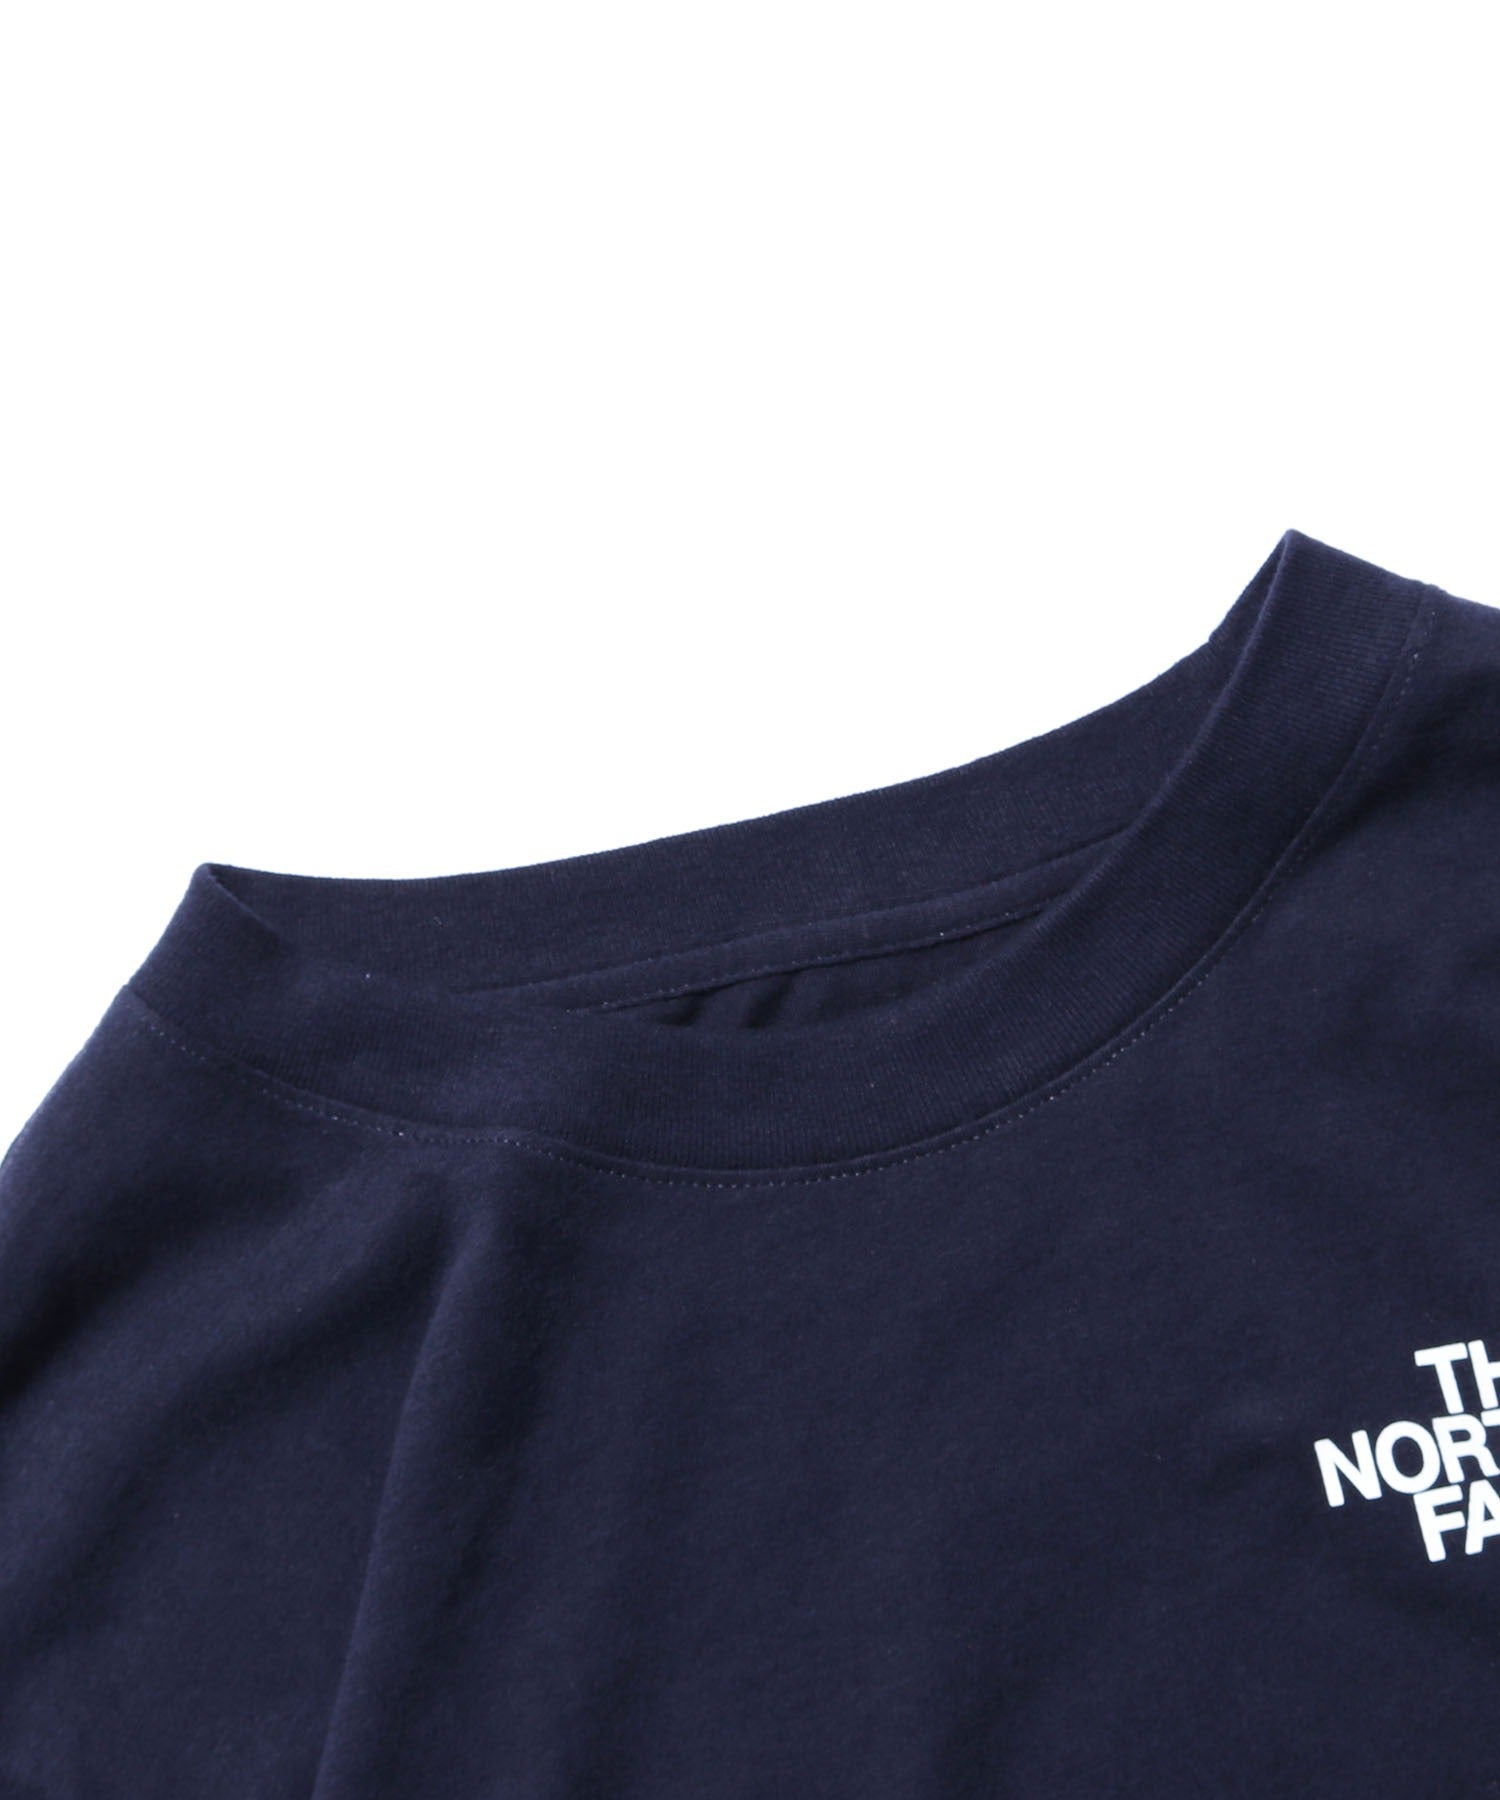 THE NORTH FACE/ザ・ノースフェイス M LS TNF Sleeve Hit Tee